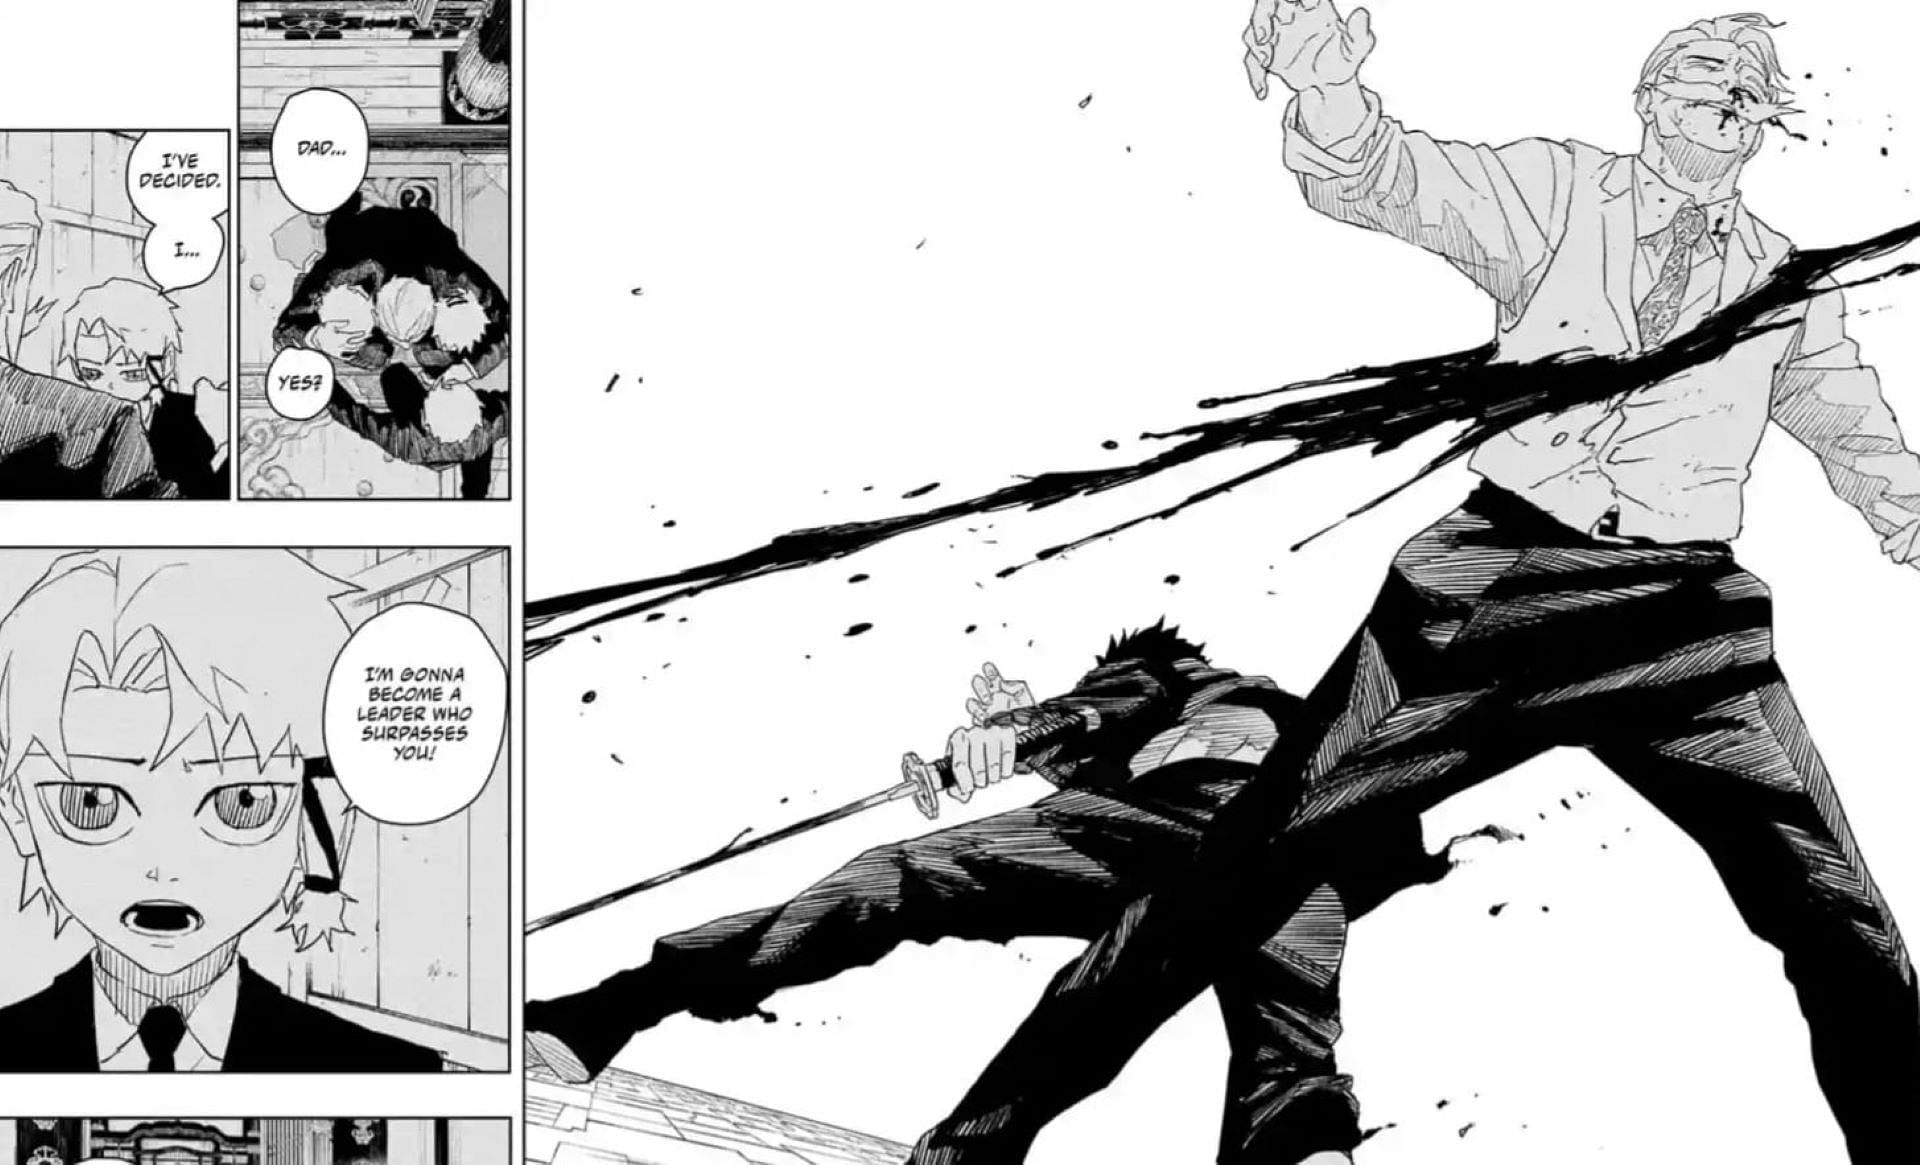 Chihiro slashes at Kyora in Kagurabachi chapter 39 (Image via Takeru Hokazono/Shueisha)